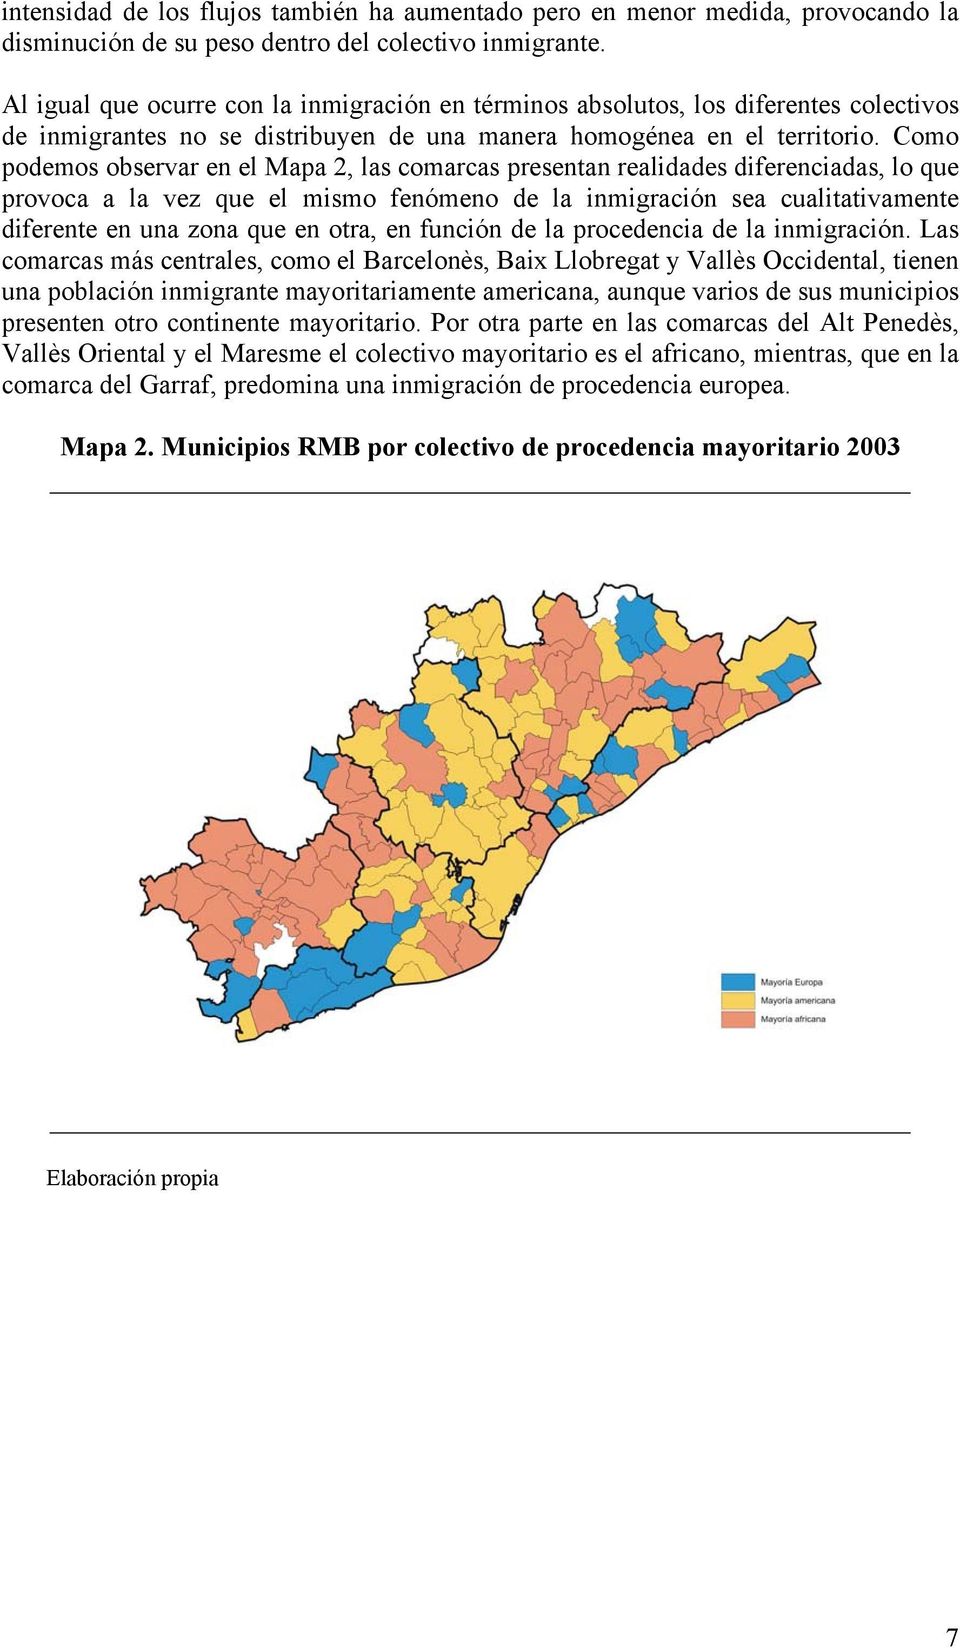 Como podemos observar en el Mapa 2, las comarcas presentan realidades diferenciadas, lo que provoca a la vez que el mismo fenómeno de la inmigración sea cualitativamente diferente en una zona que en